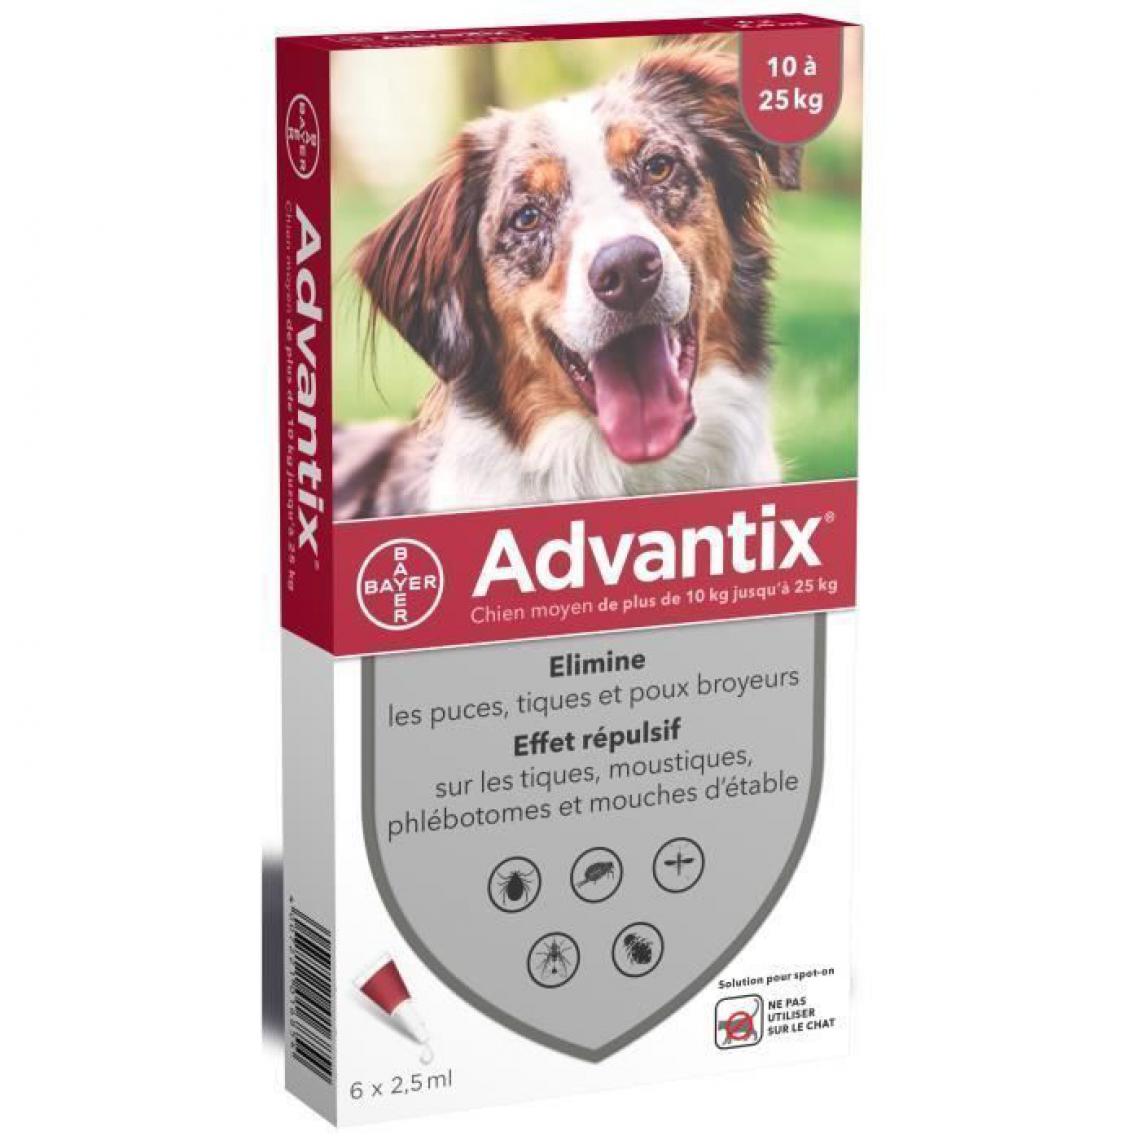 Advantix - ADVANTIX 6 pipettes antiparasitaires - Pour chien moyen de 10 a 25kg - Anti-parasitaire pour chien